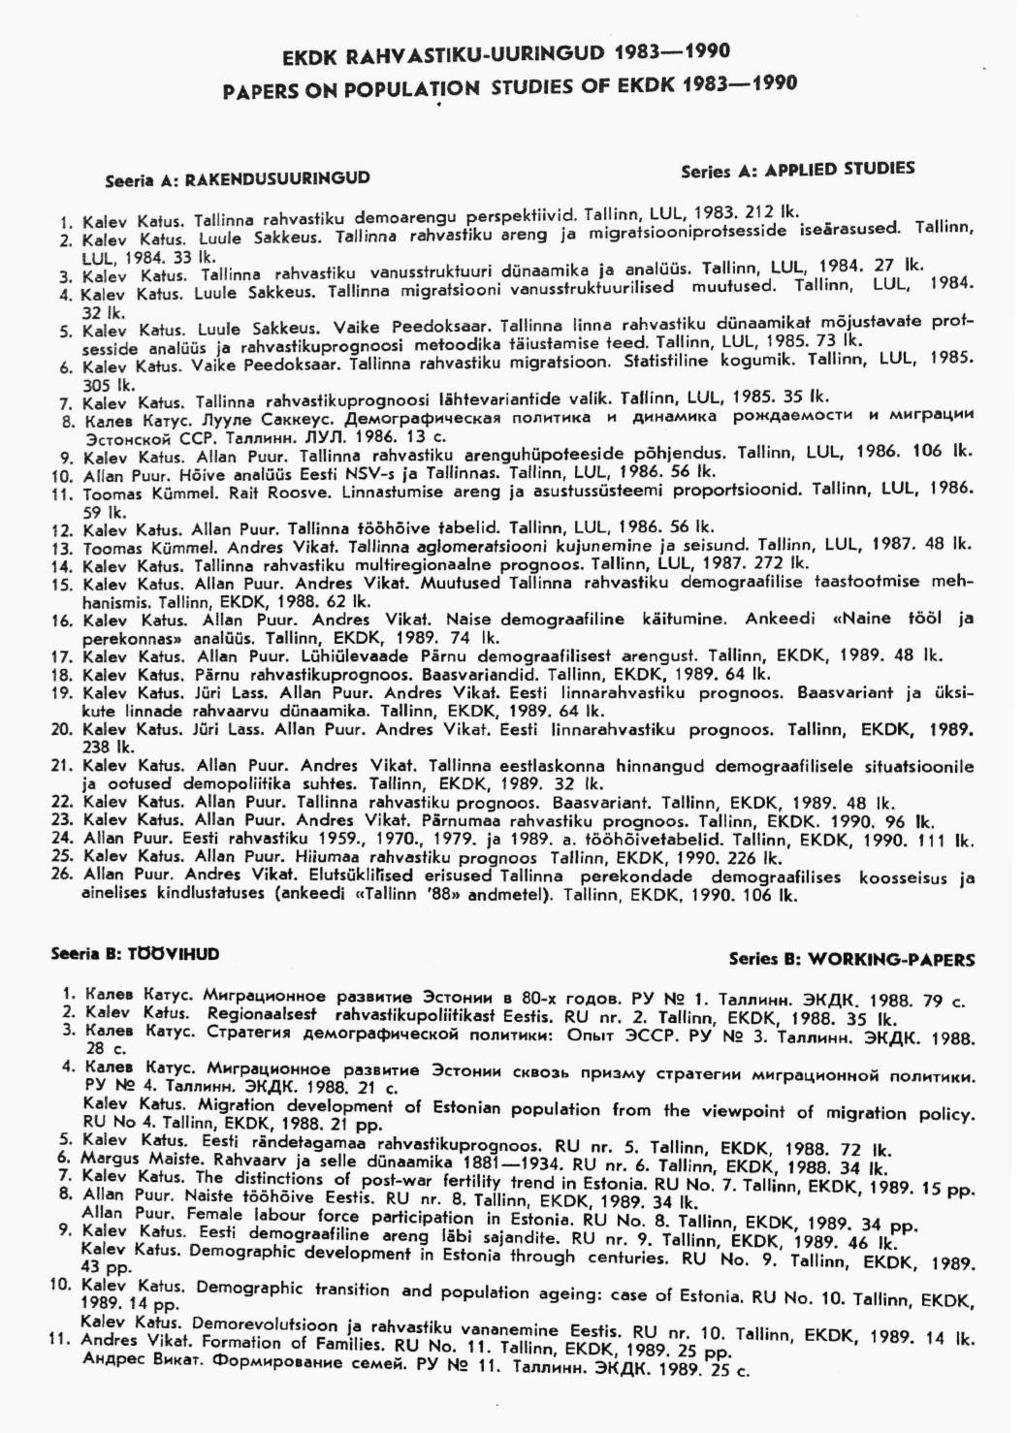 EKDK RAHVASTIKU-UURINGUD 1983 1990 PAPERS ON POPULATION STUDIES OF EKDK 1983 1990 Steria A: RAKENDUSUURINGUD Series A: APPLIED STUDIES 1 Kalev Katus. Tallinna rahvastiku demoarengu perspektiivid.